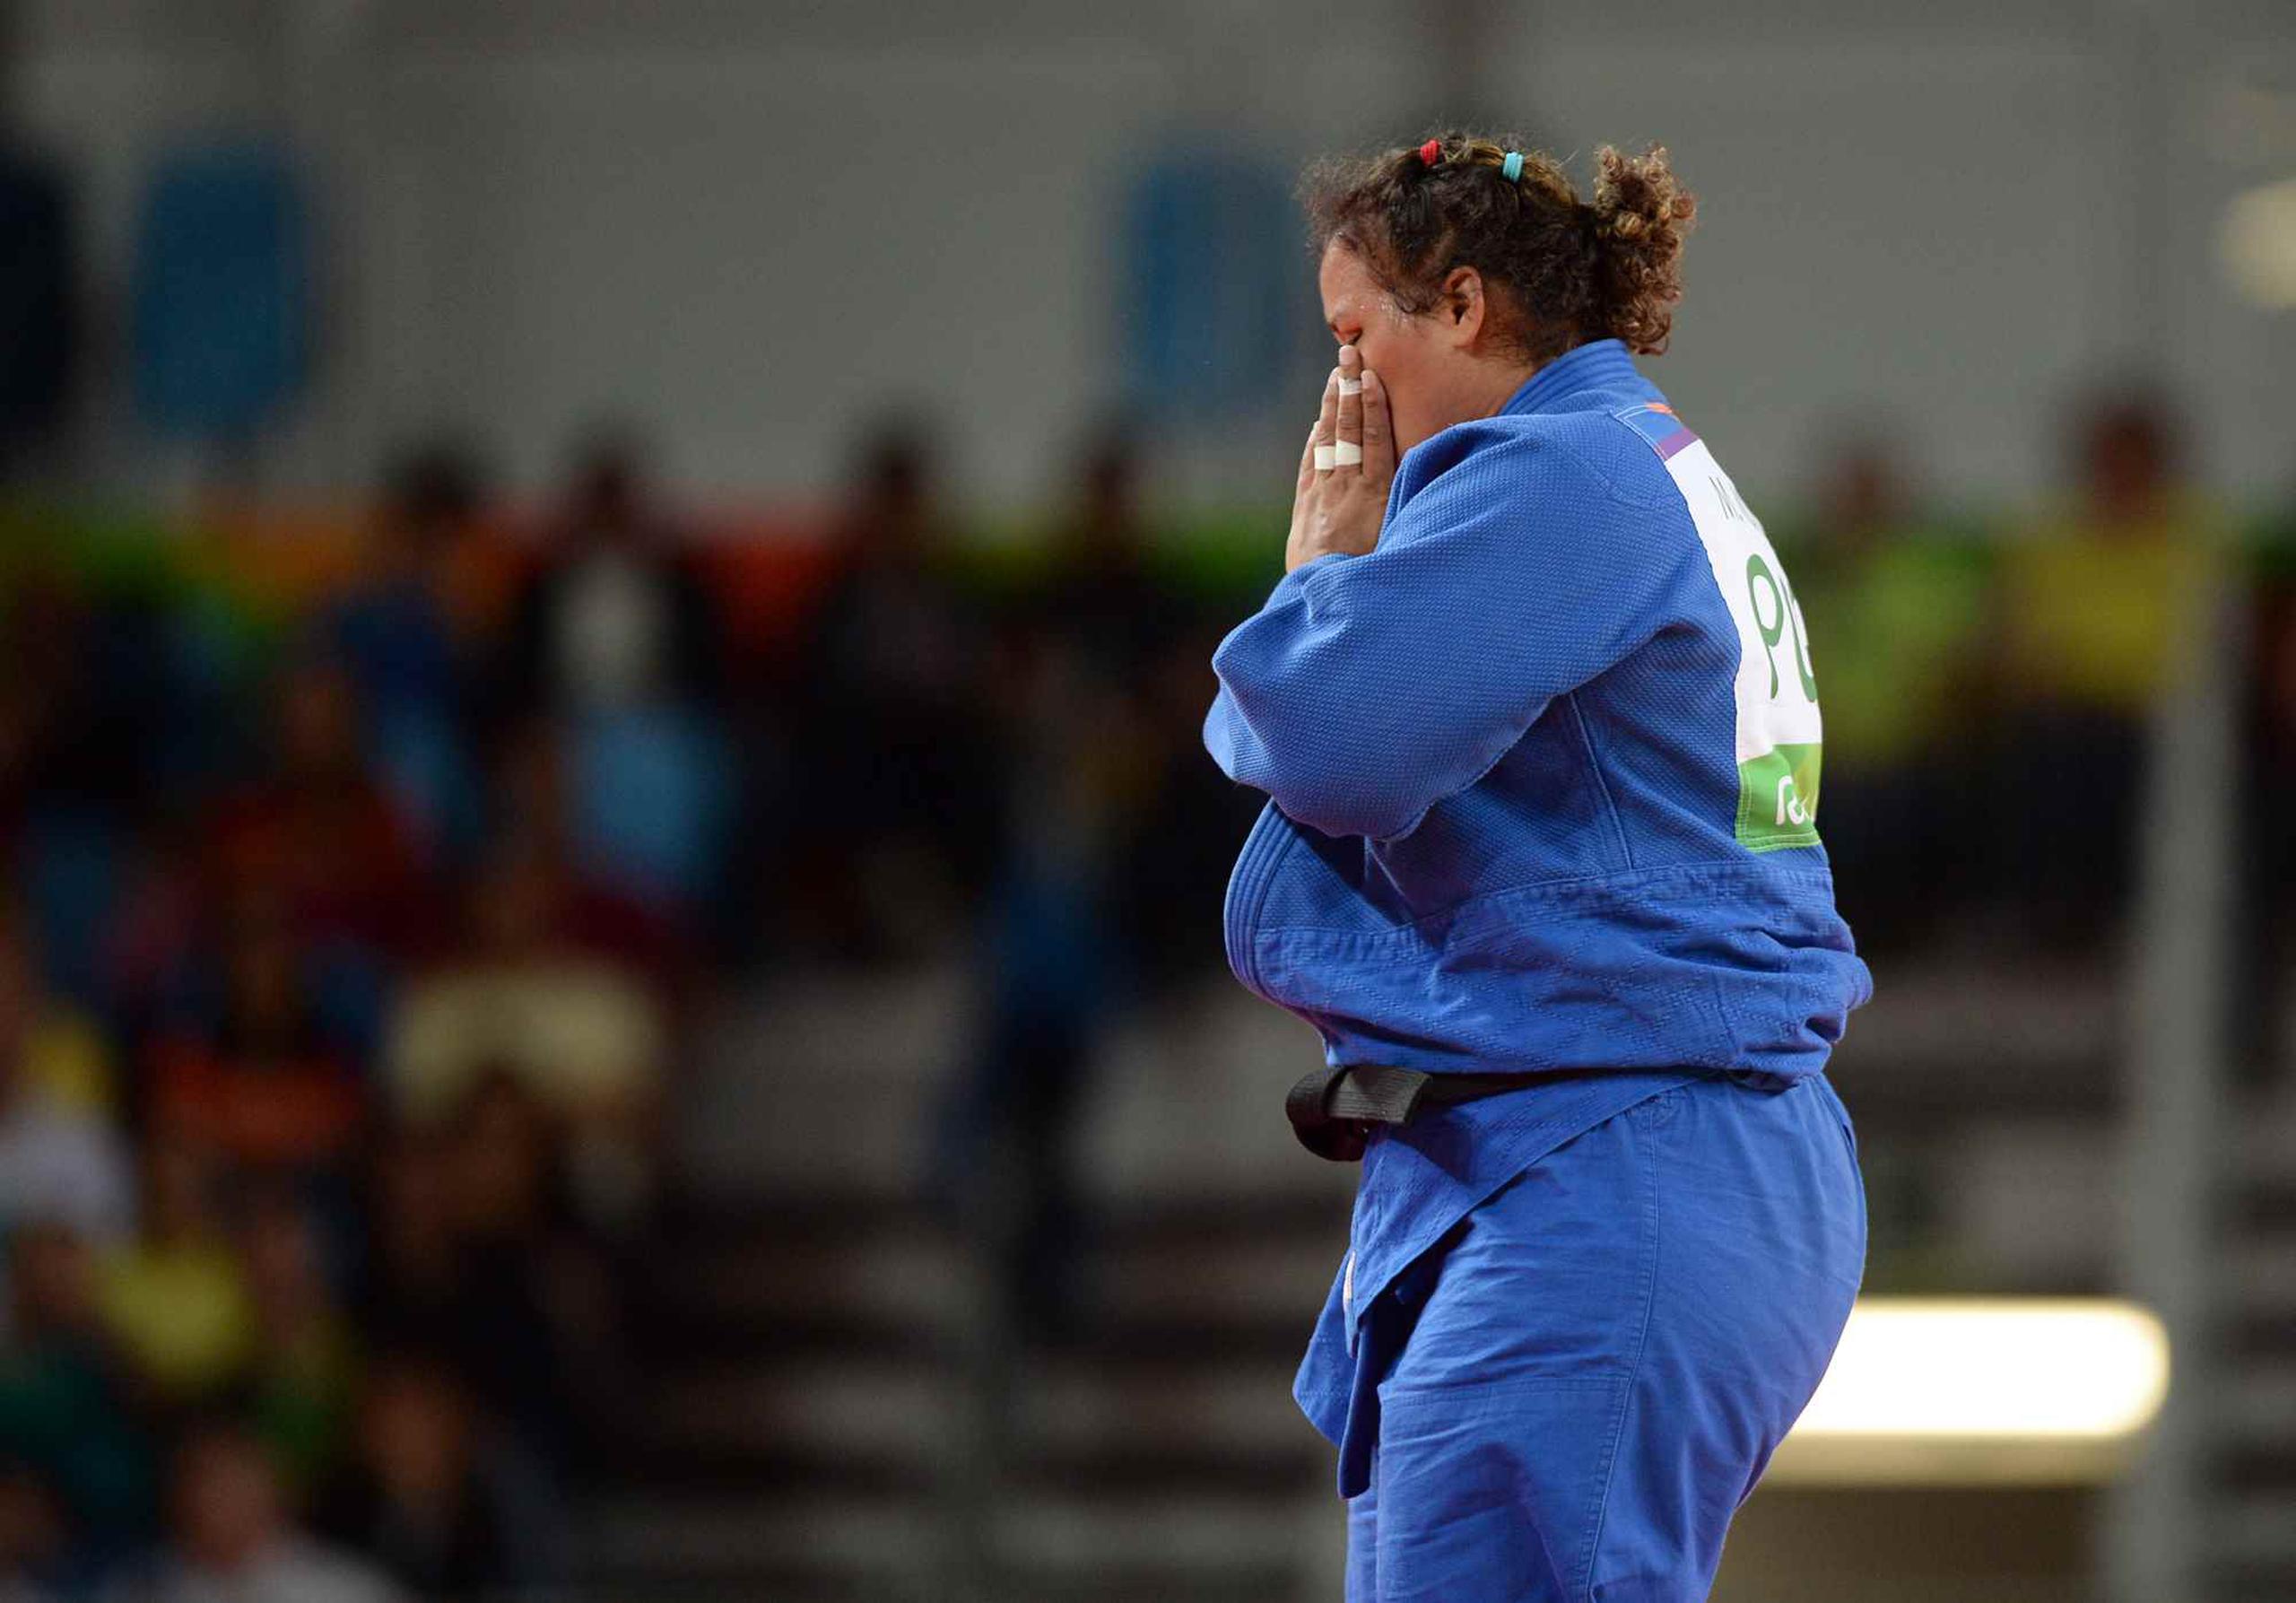 La boricua cayó derrotada vía ippon en los últimos segundos del encuentro de cuatro minutos ante la turca Kayra Sayit.